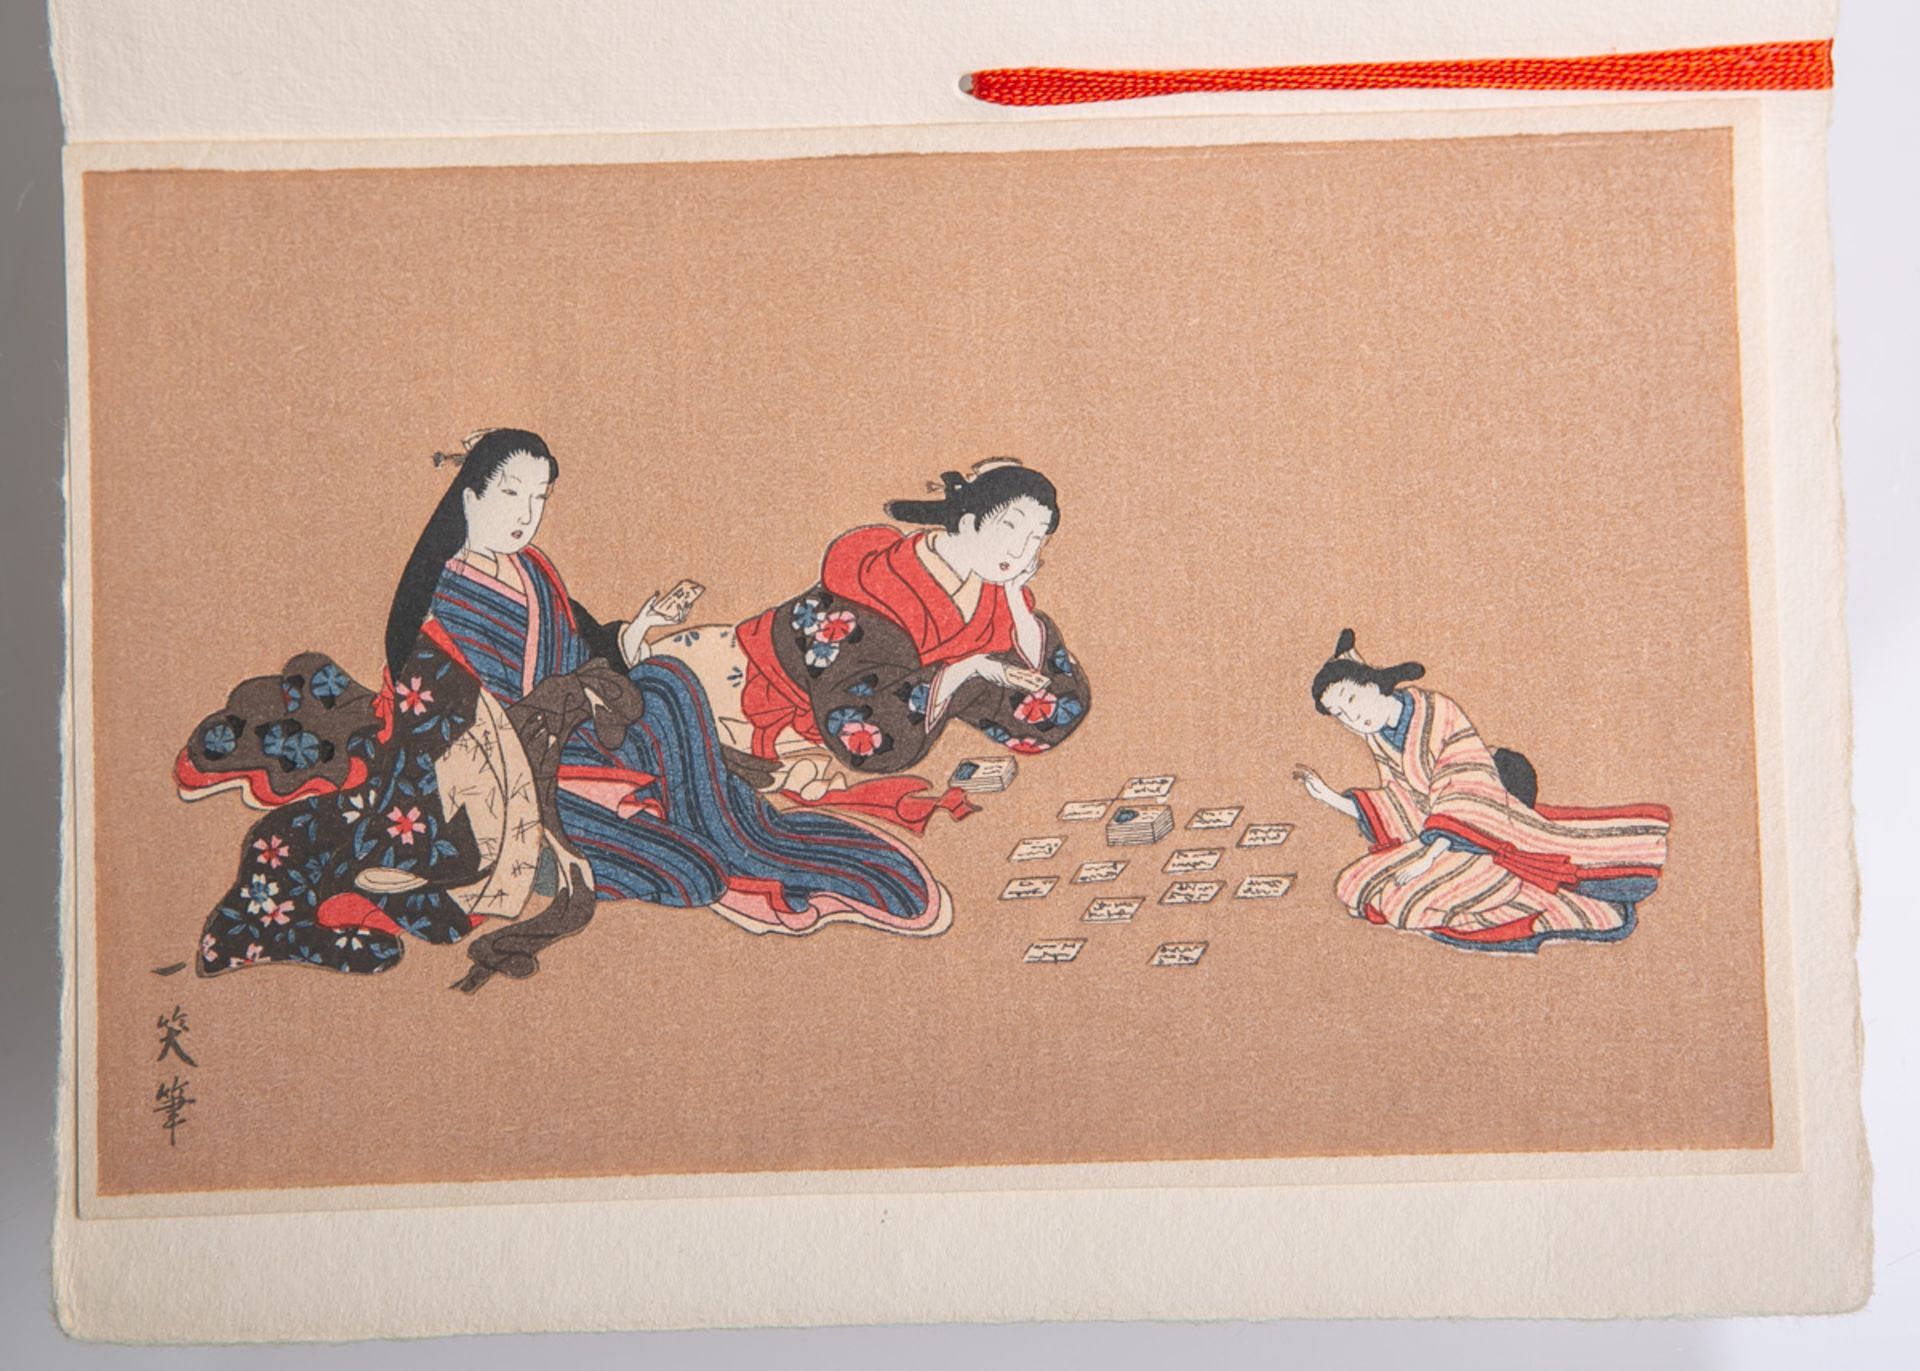 Unbekannter Künstler (Japan, Alter unbekannt), 3 Geishas beim Karten spielen